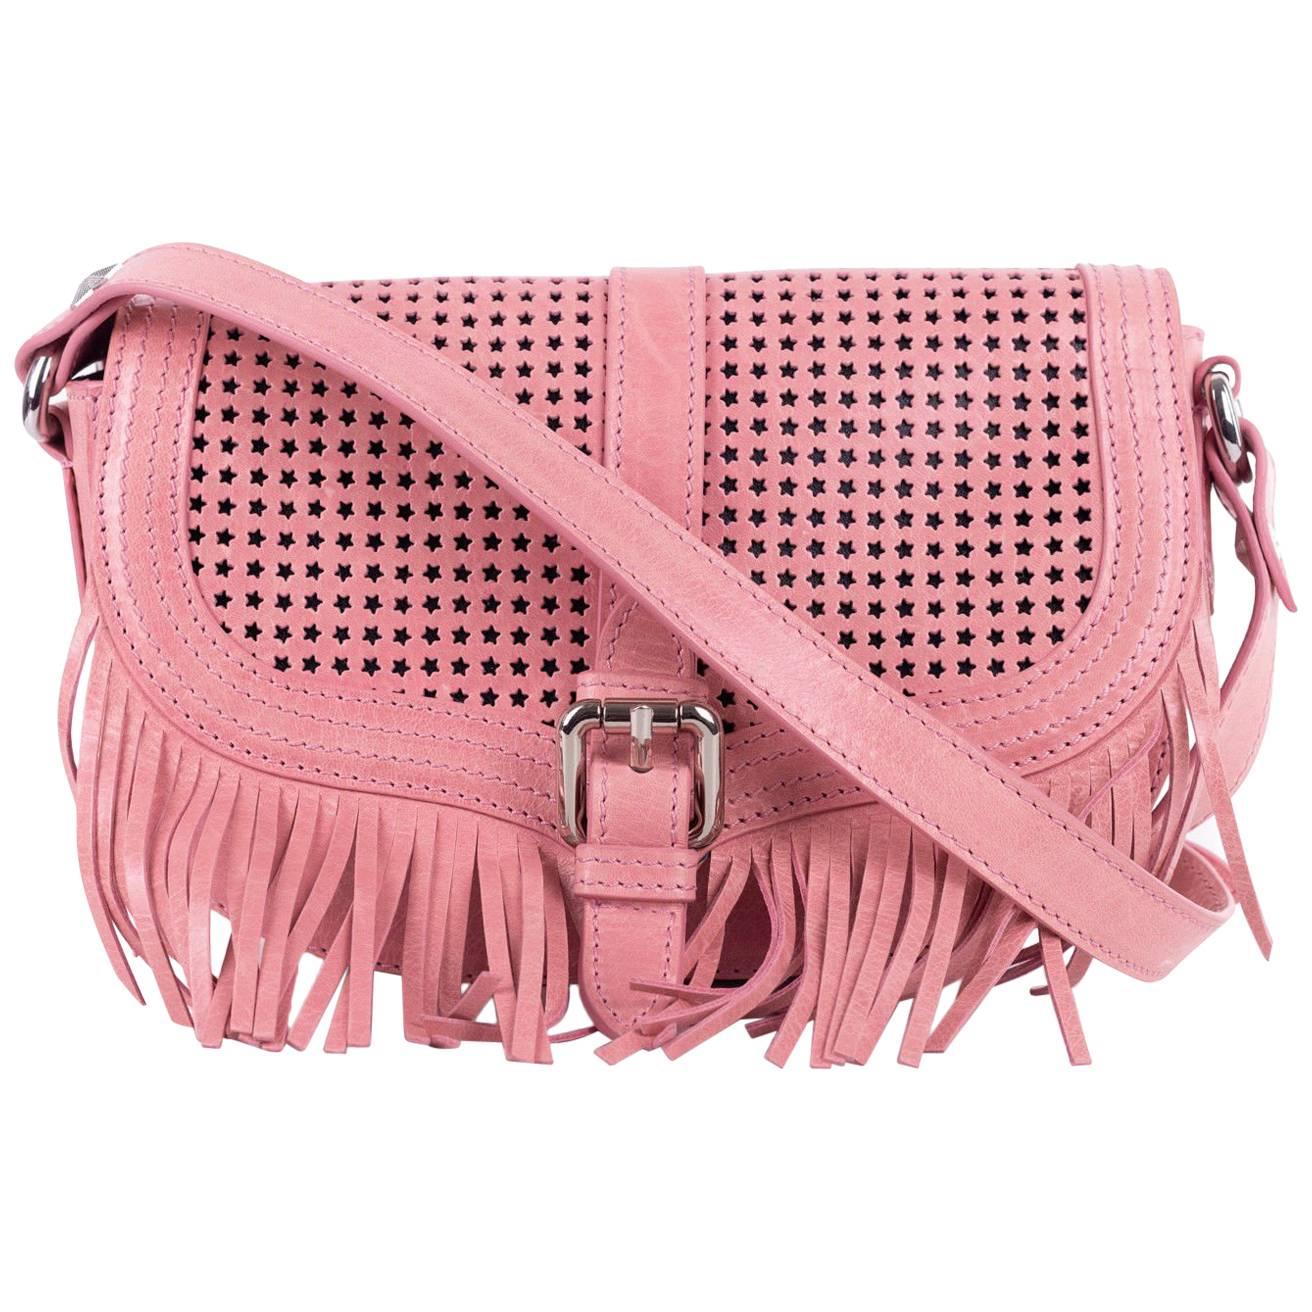 Roberto Cavalli Pink Leather Star Fringe Shoulder Bag For Sale